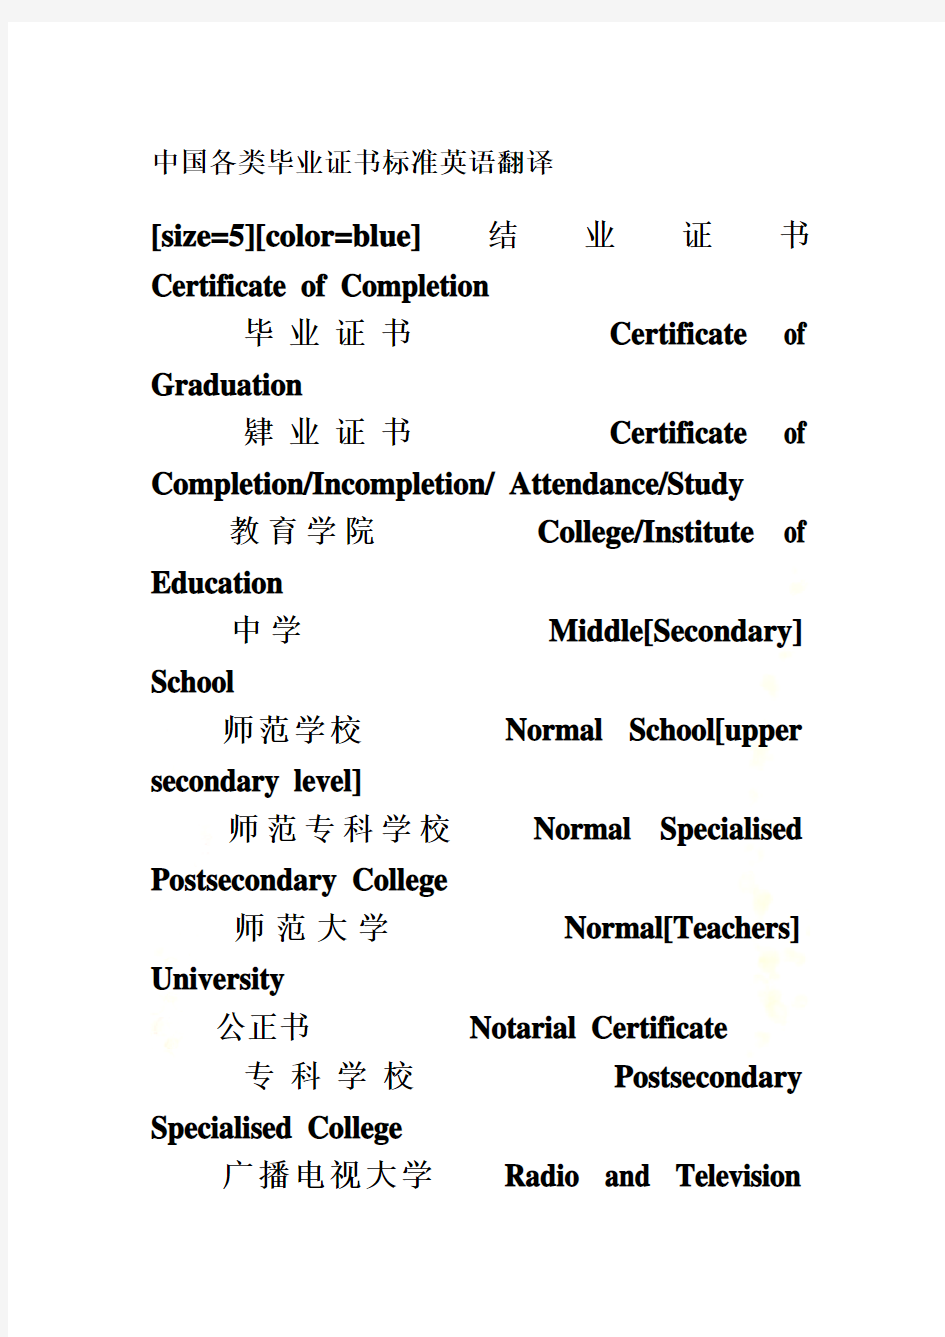 中国各类毕业证书标准英语翻译